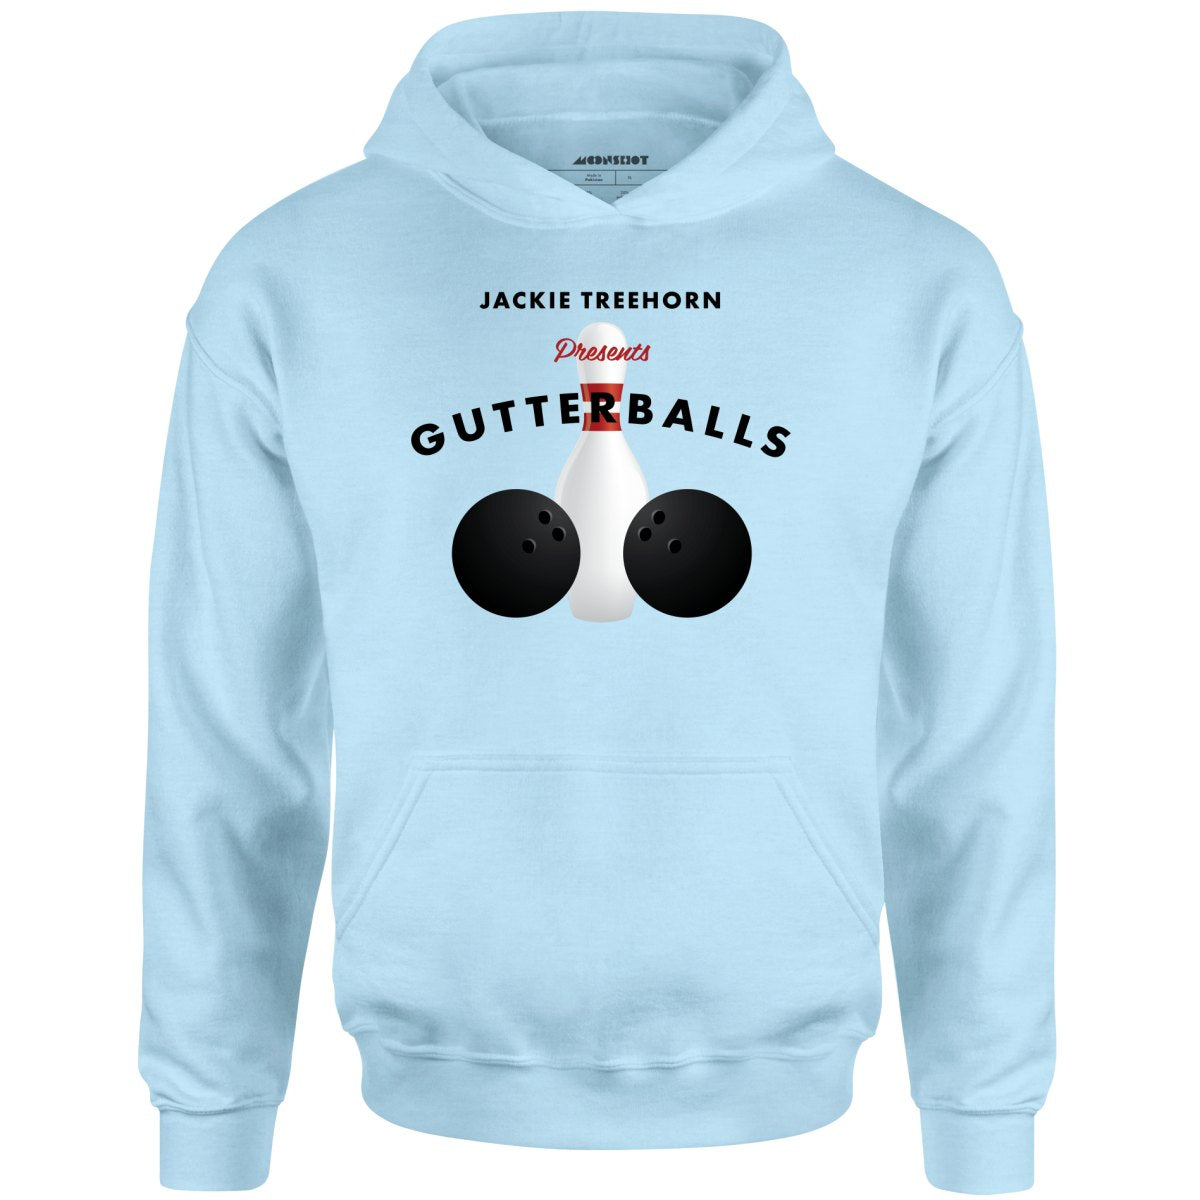 Jackie Treehorn Presents Gutterballs - Unisex Hoodie